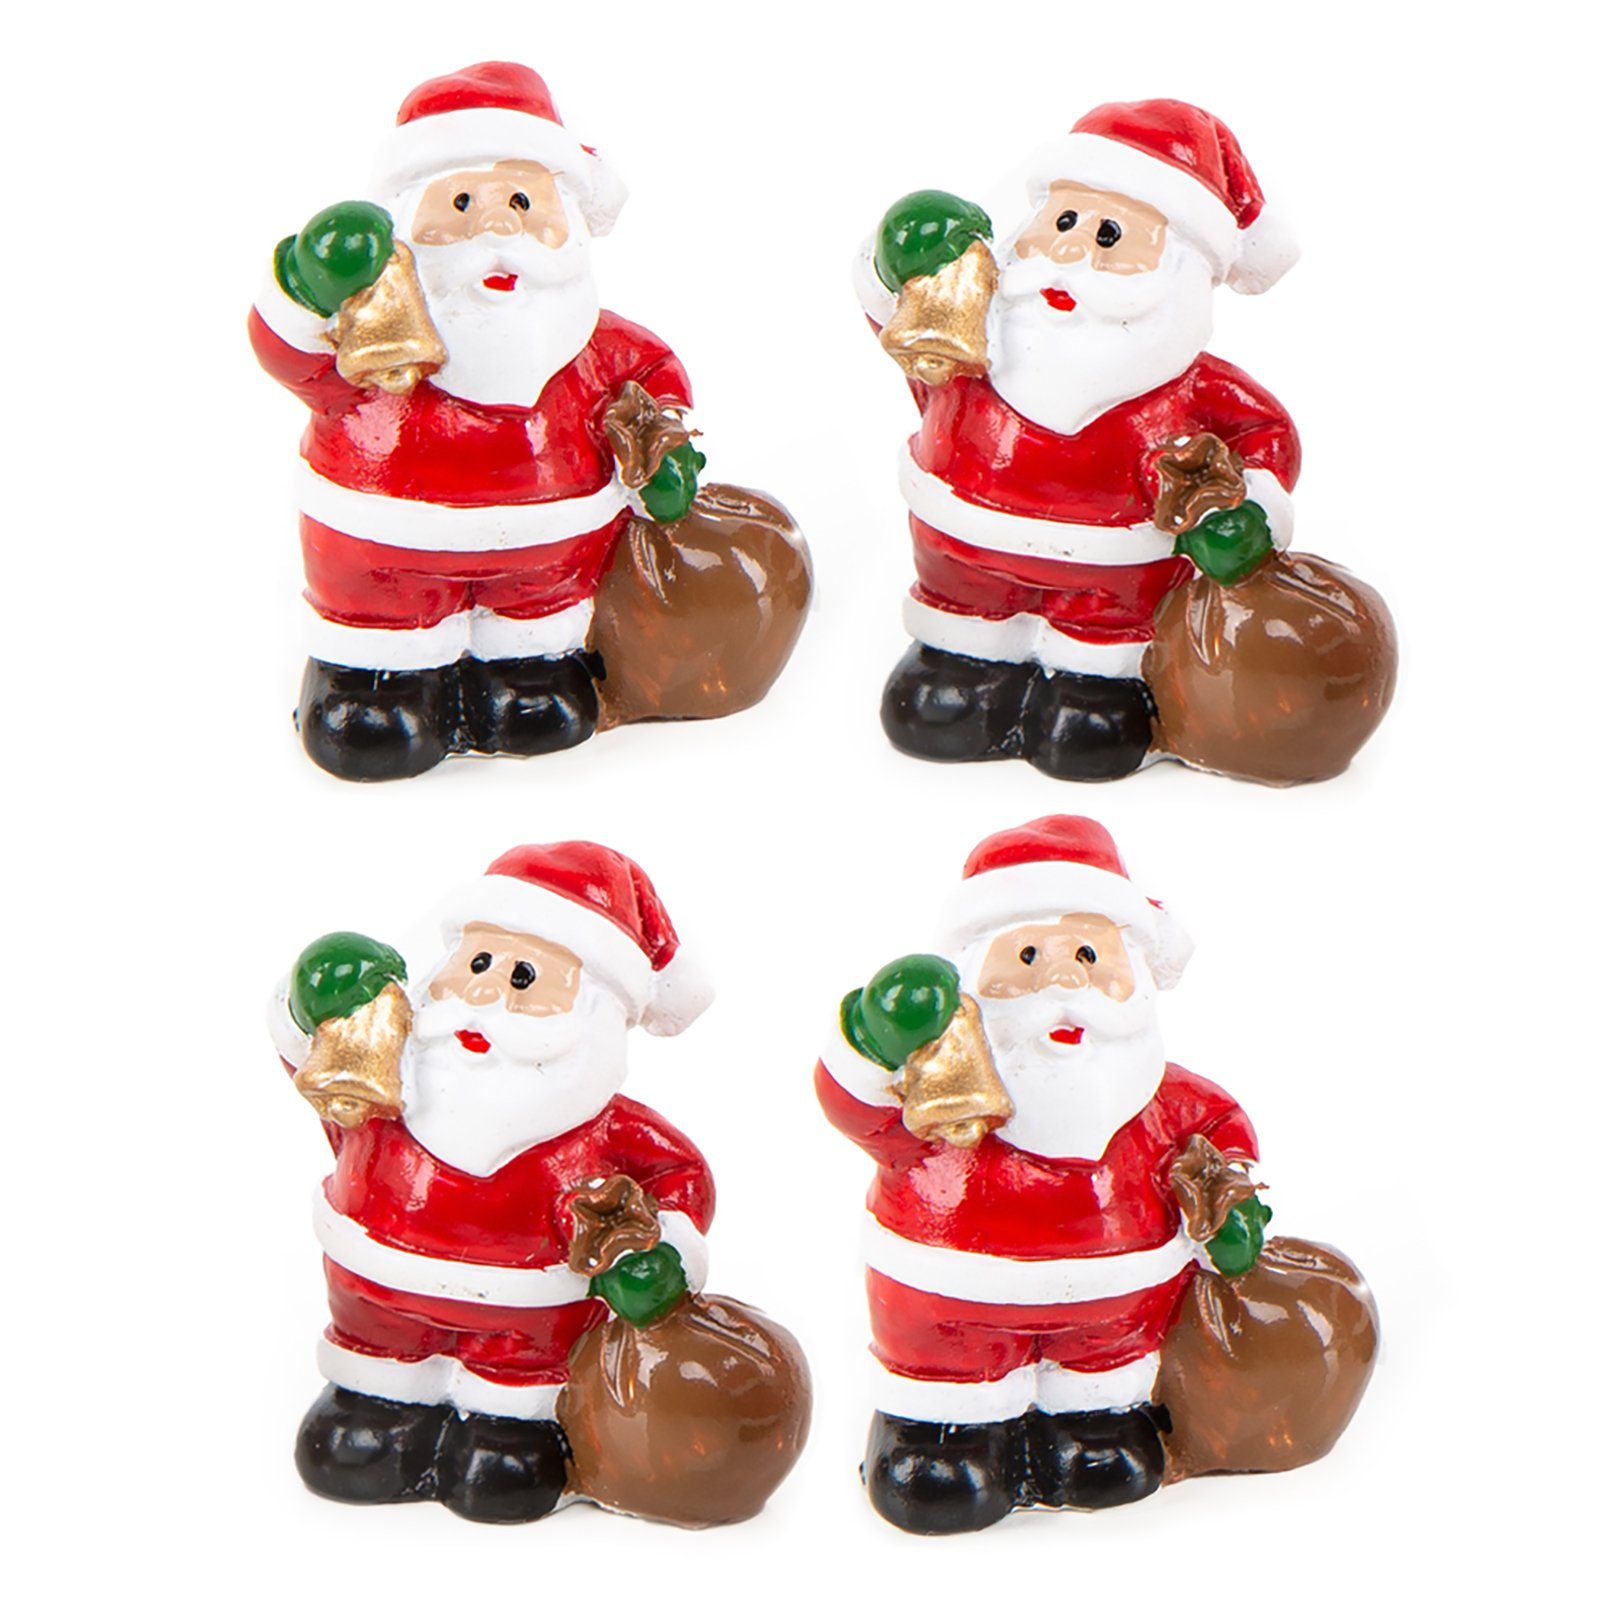 Logbuch-Verlag Weihnachtsfigur 4 Nikolaus Weihnachtsmann Figuren 3,5 cm Geschenk (Set, 4 St), kleine Figuren zum Verschenken oder Dekorieren